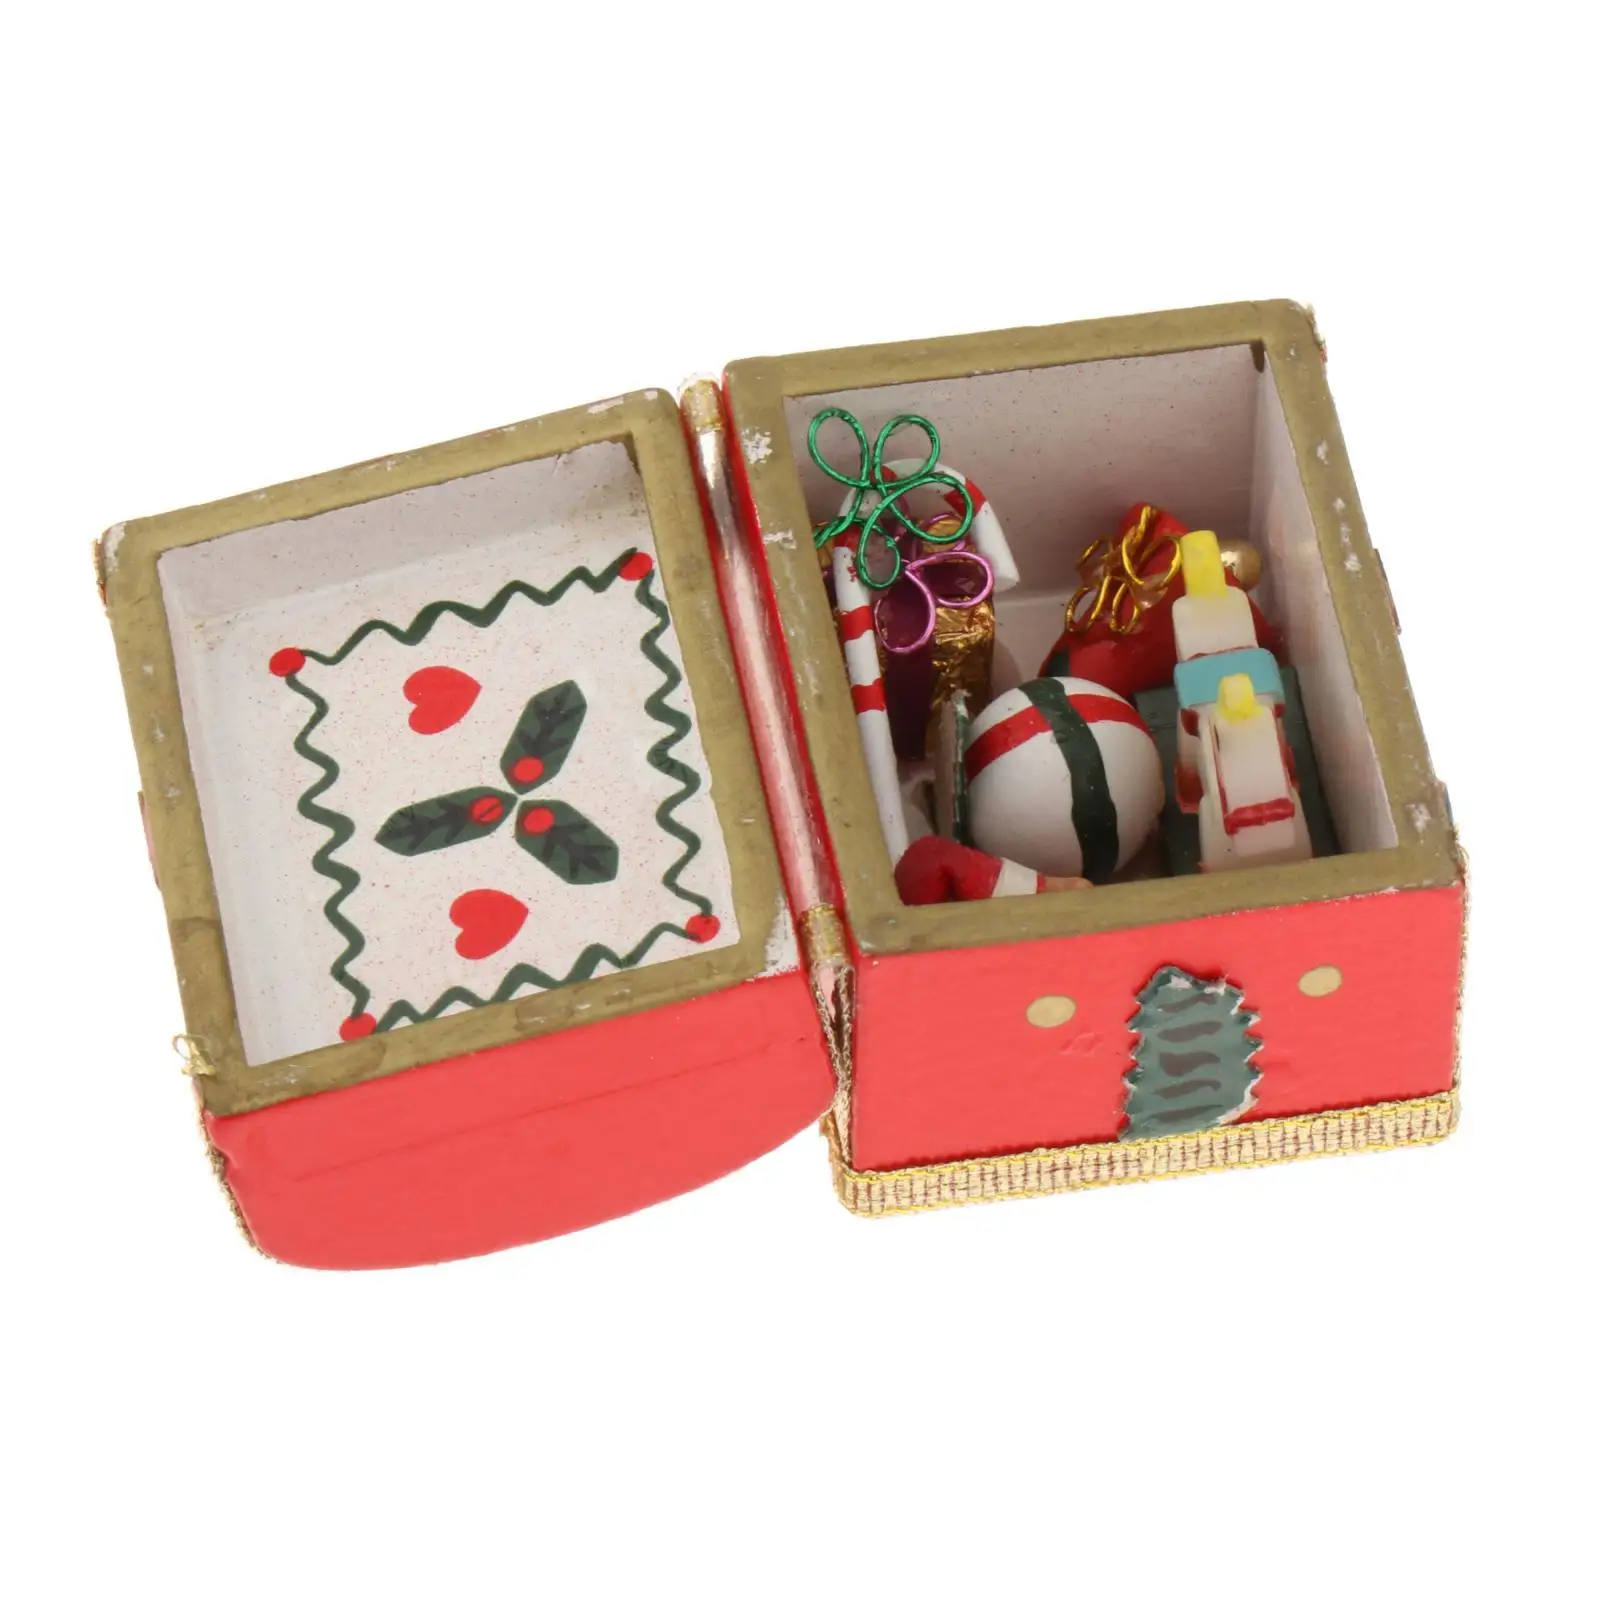 1/12 Scale Miniature Christmas Chest Handmade Mini Treasure Box for Miniature Scene Diorama Photo Props Accessories Decoration